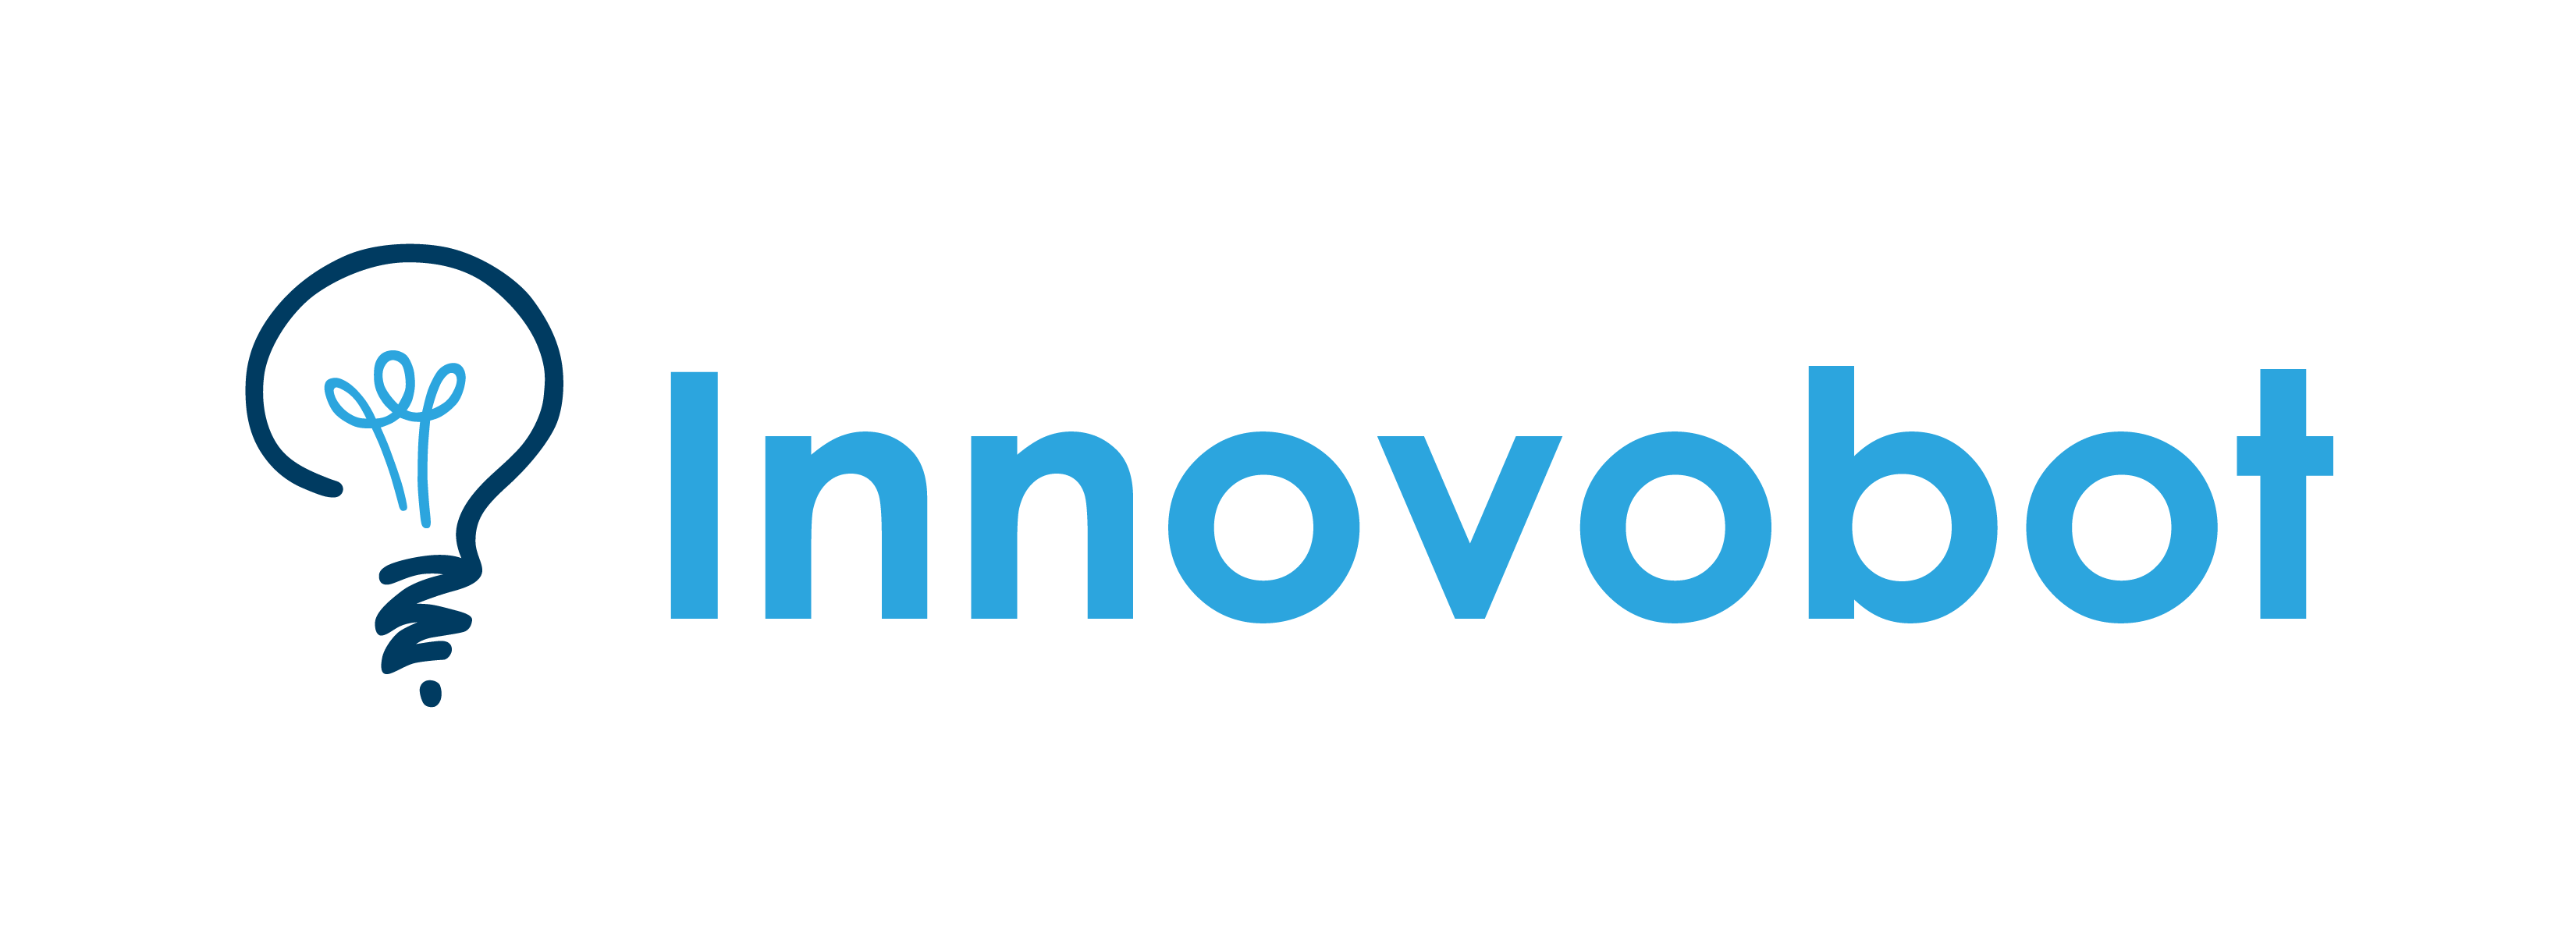 Innovobot-logo horizontal